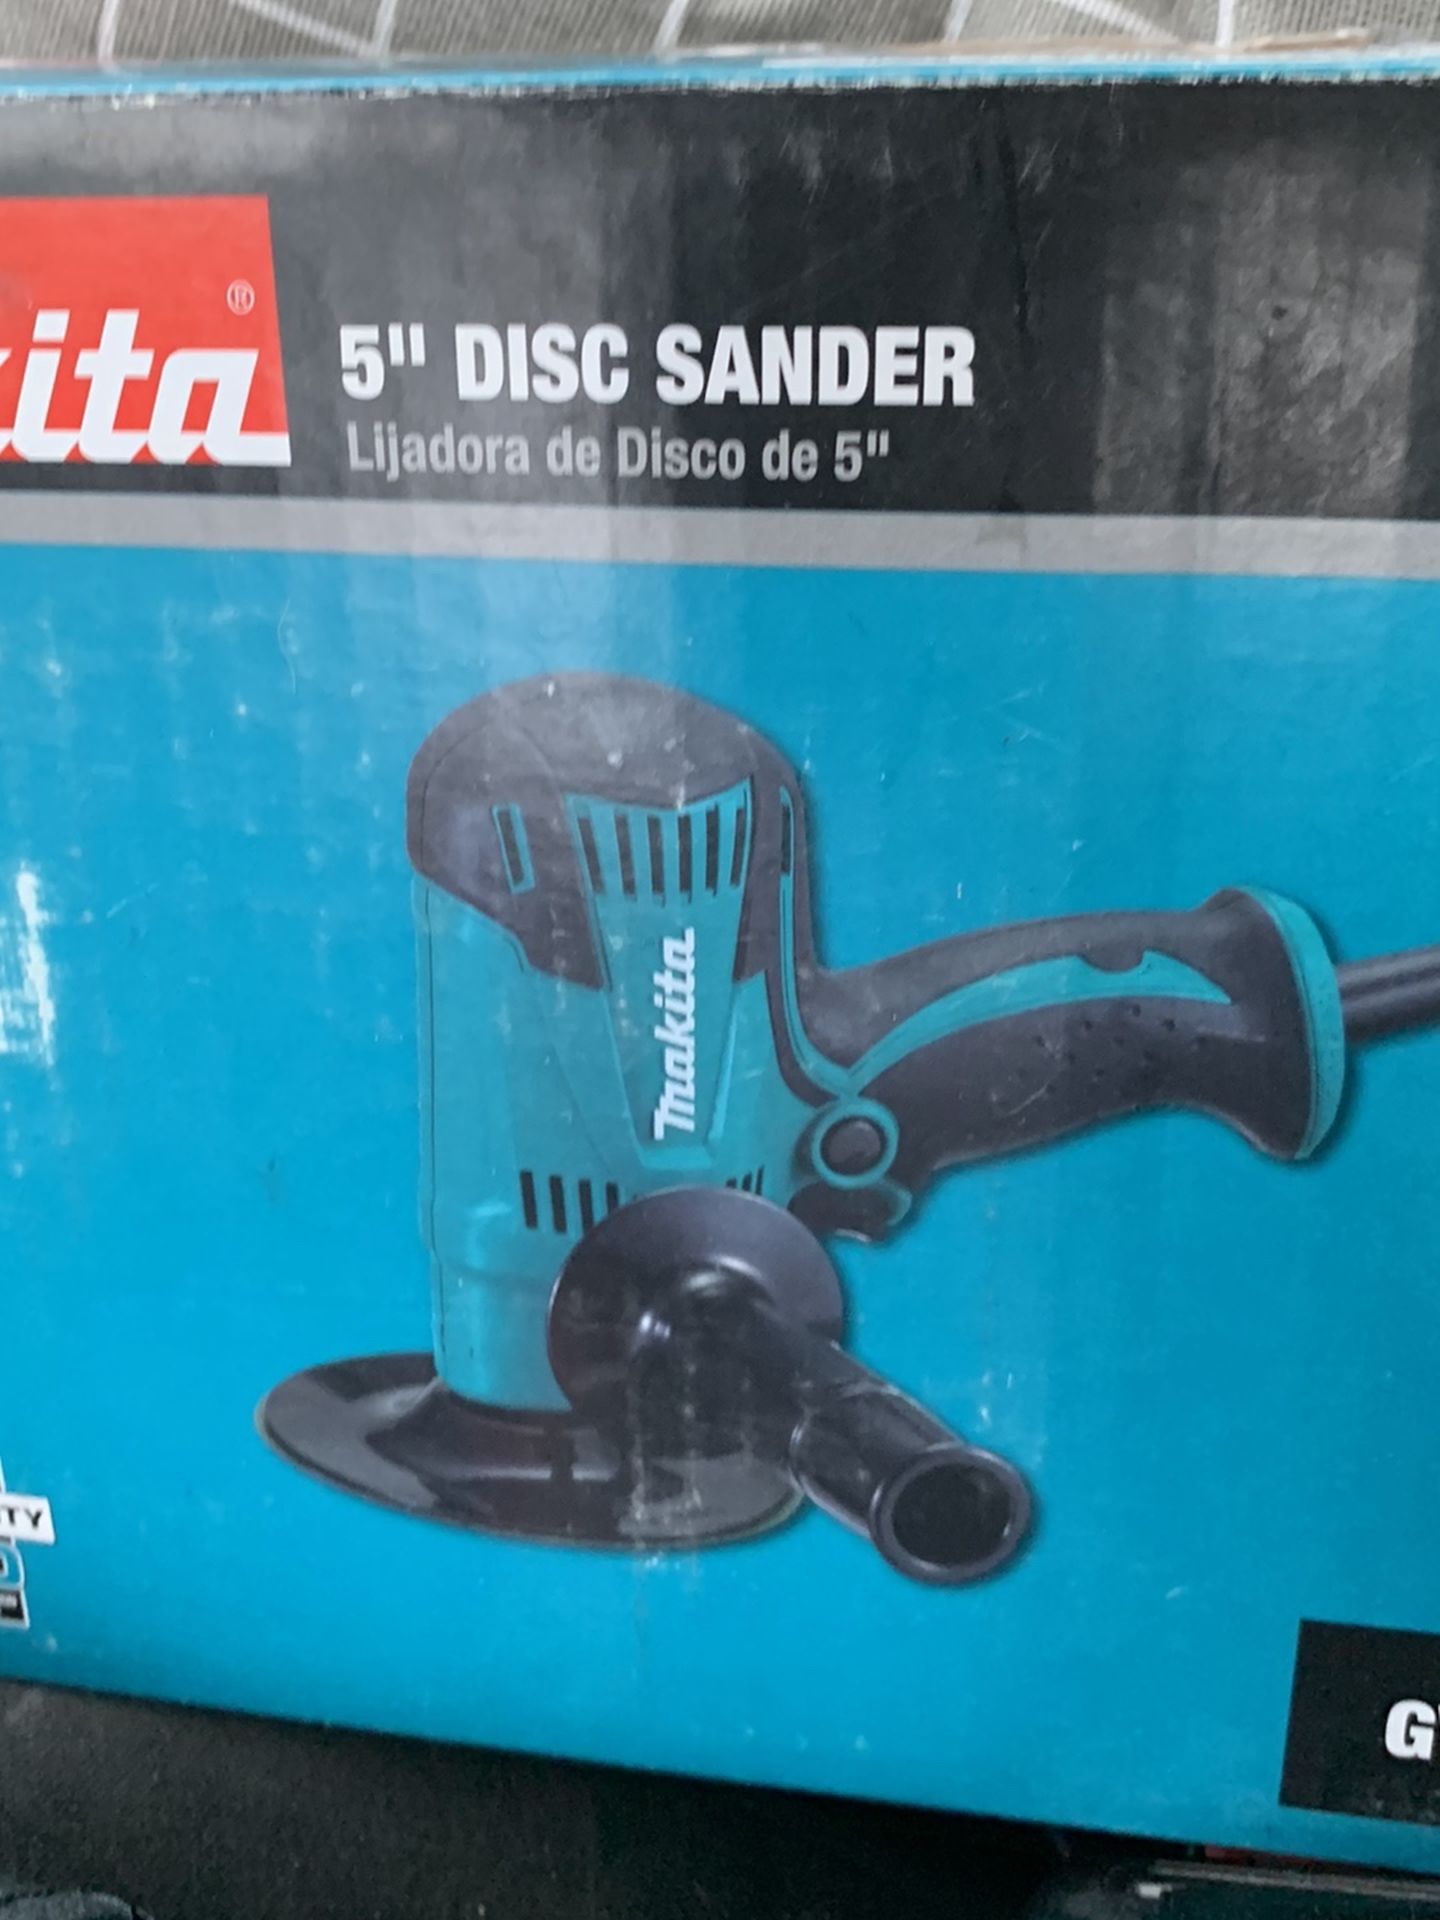 5” Makita Disc Sander Brand New In The Box